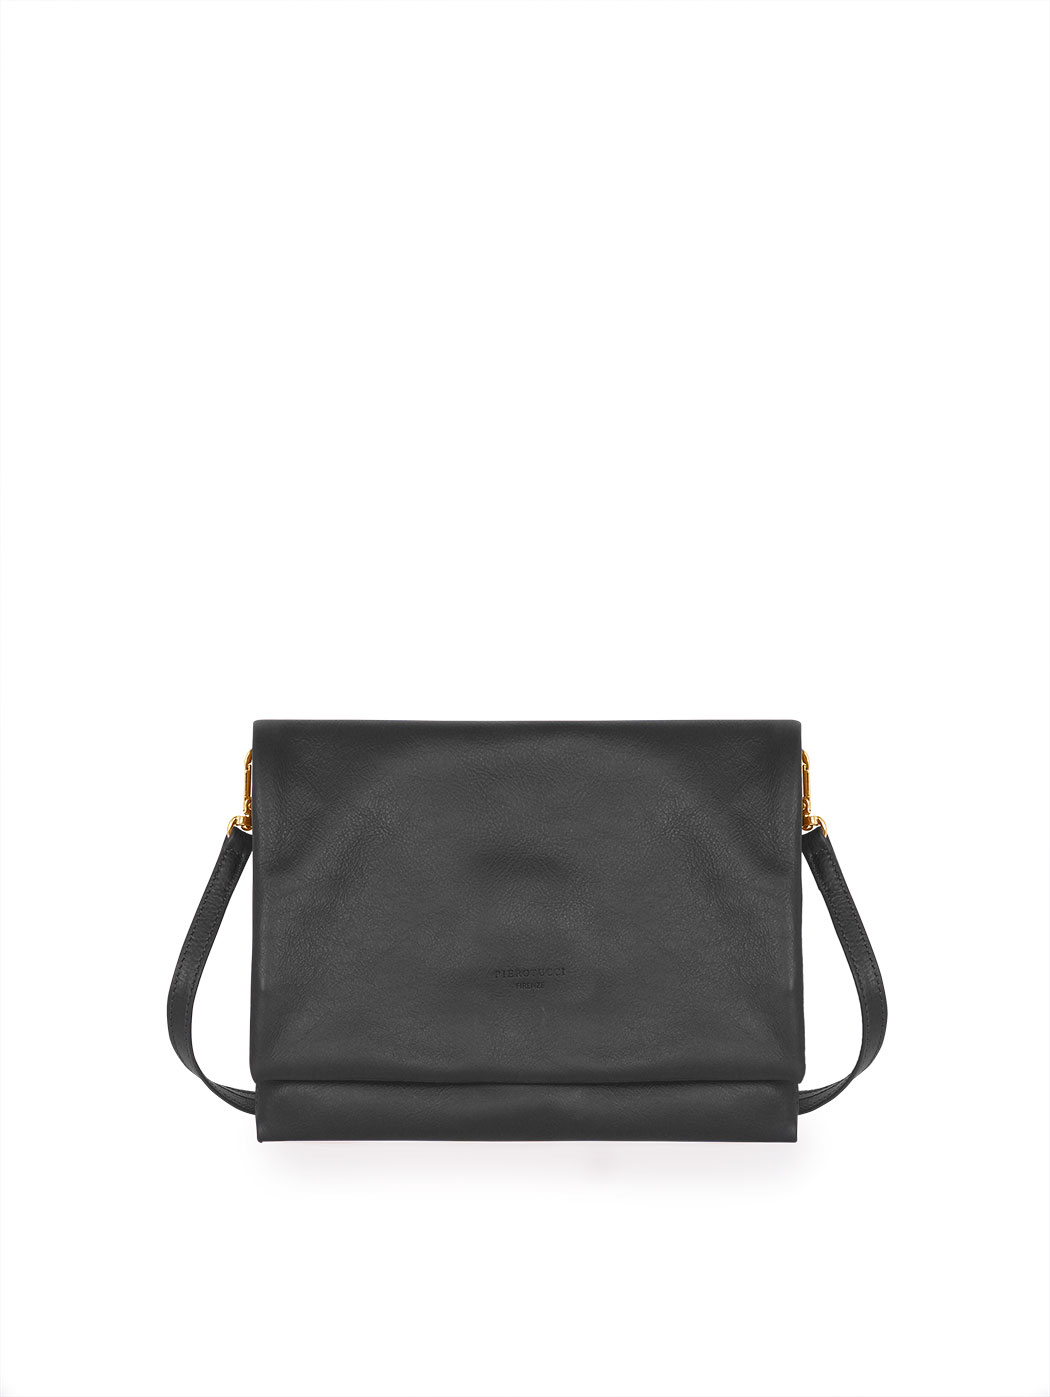 Silver Phone Mini Bag Small Clutch Shoulder Bag Ladies Handbag Black Clutch  Wallet Handbag Flip